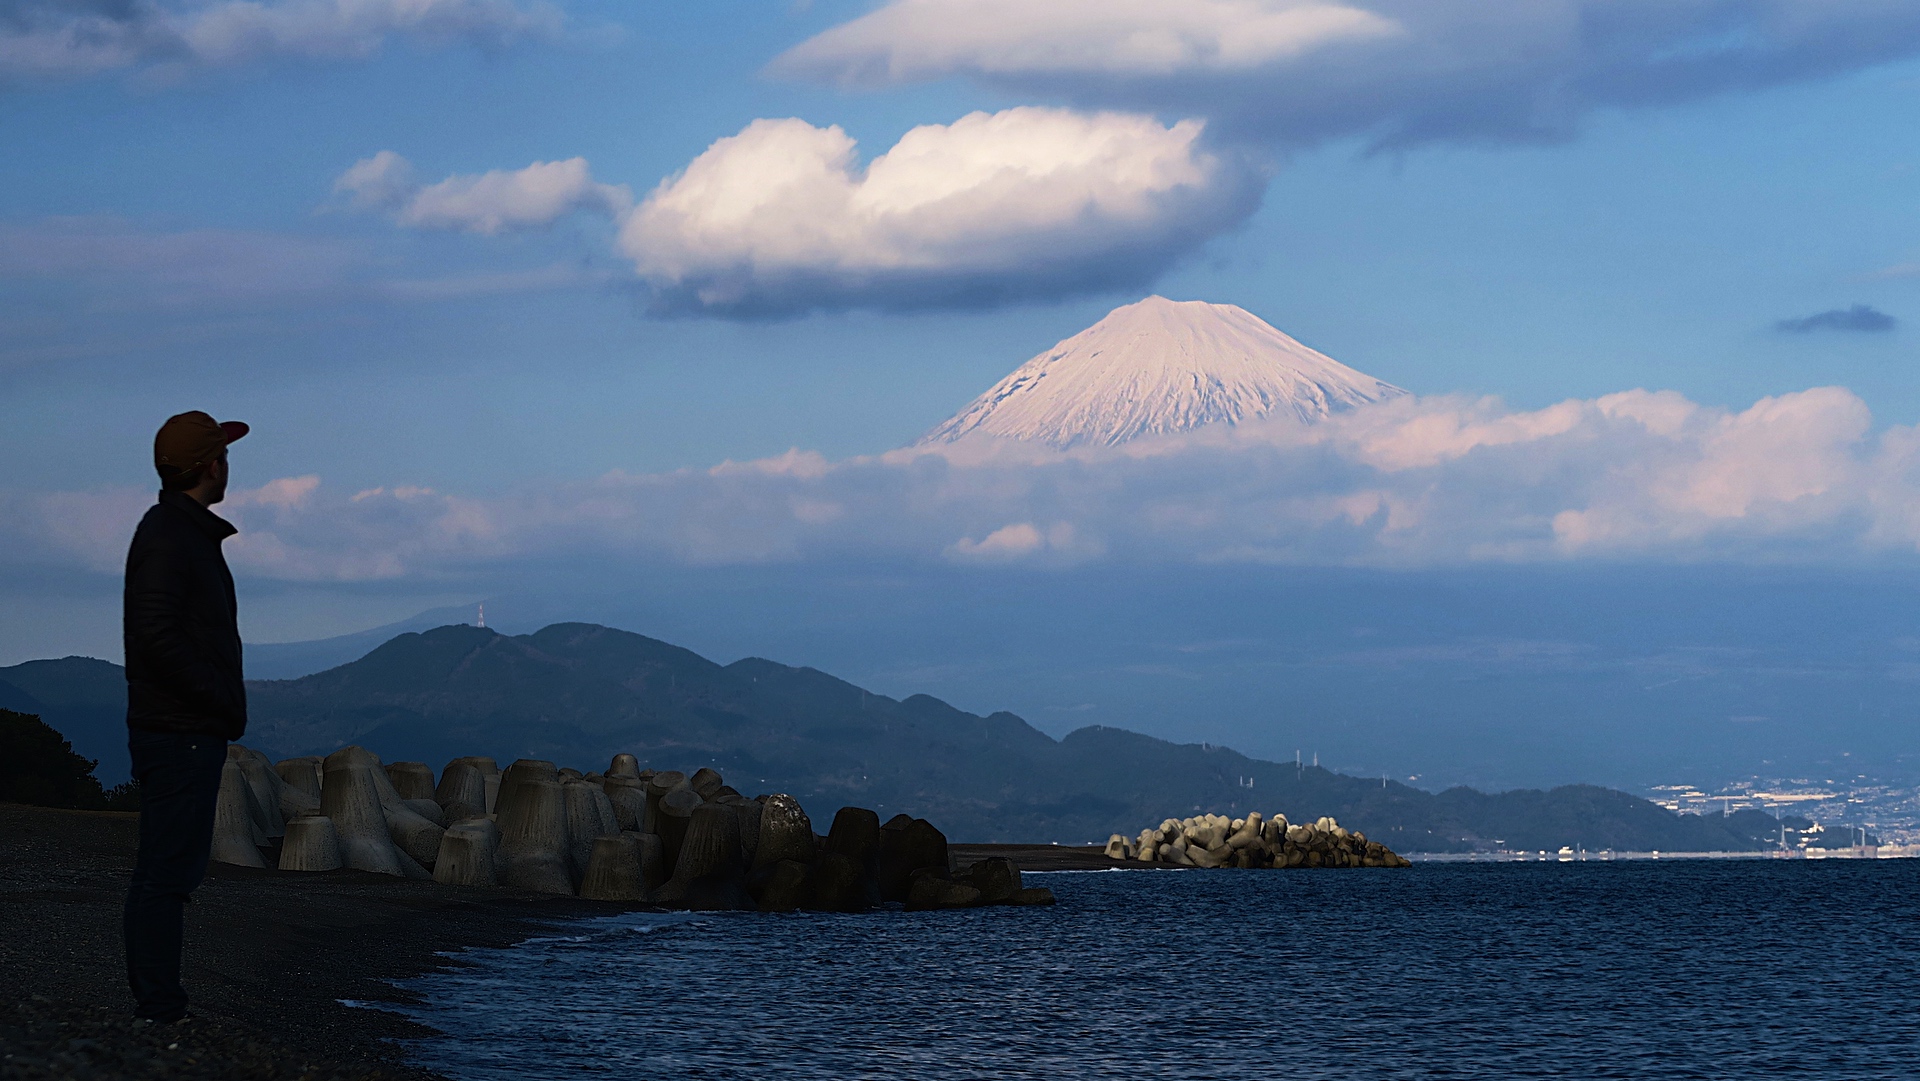 Der Blick auf den Fuji vom Meer.